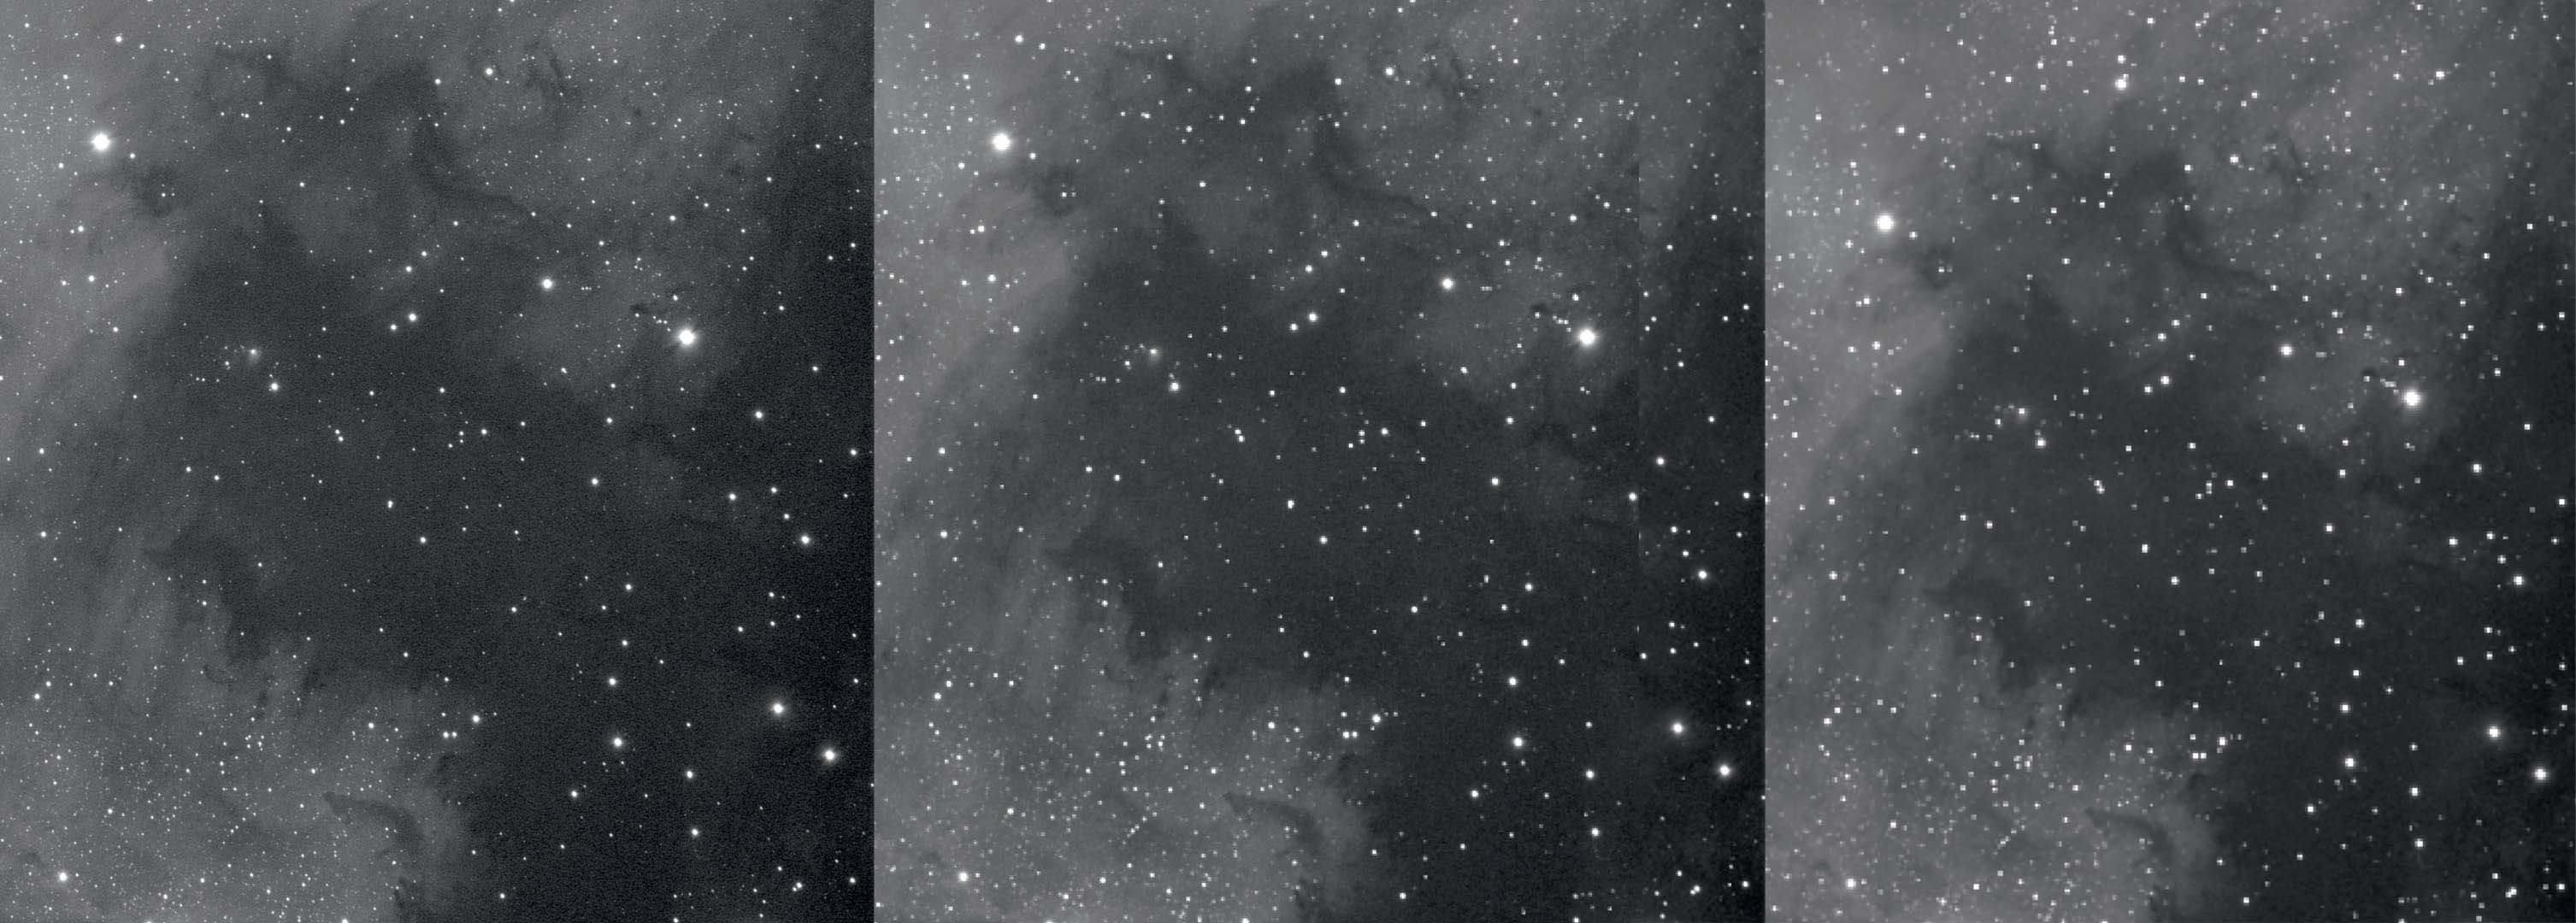 Una porzione della nebulosa Nordamerica senza binning, con binning 2x e 3x (da sinistra a destra). Con il binning si riduce la risoluzione e migliora il rapporto segnale/rumore. M.Weigand